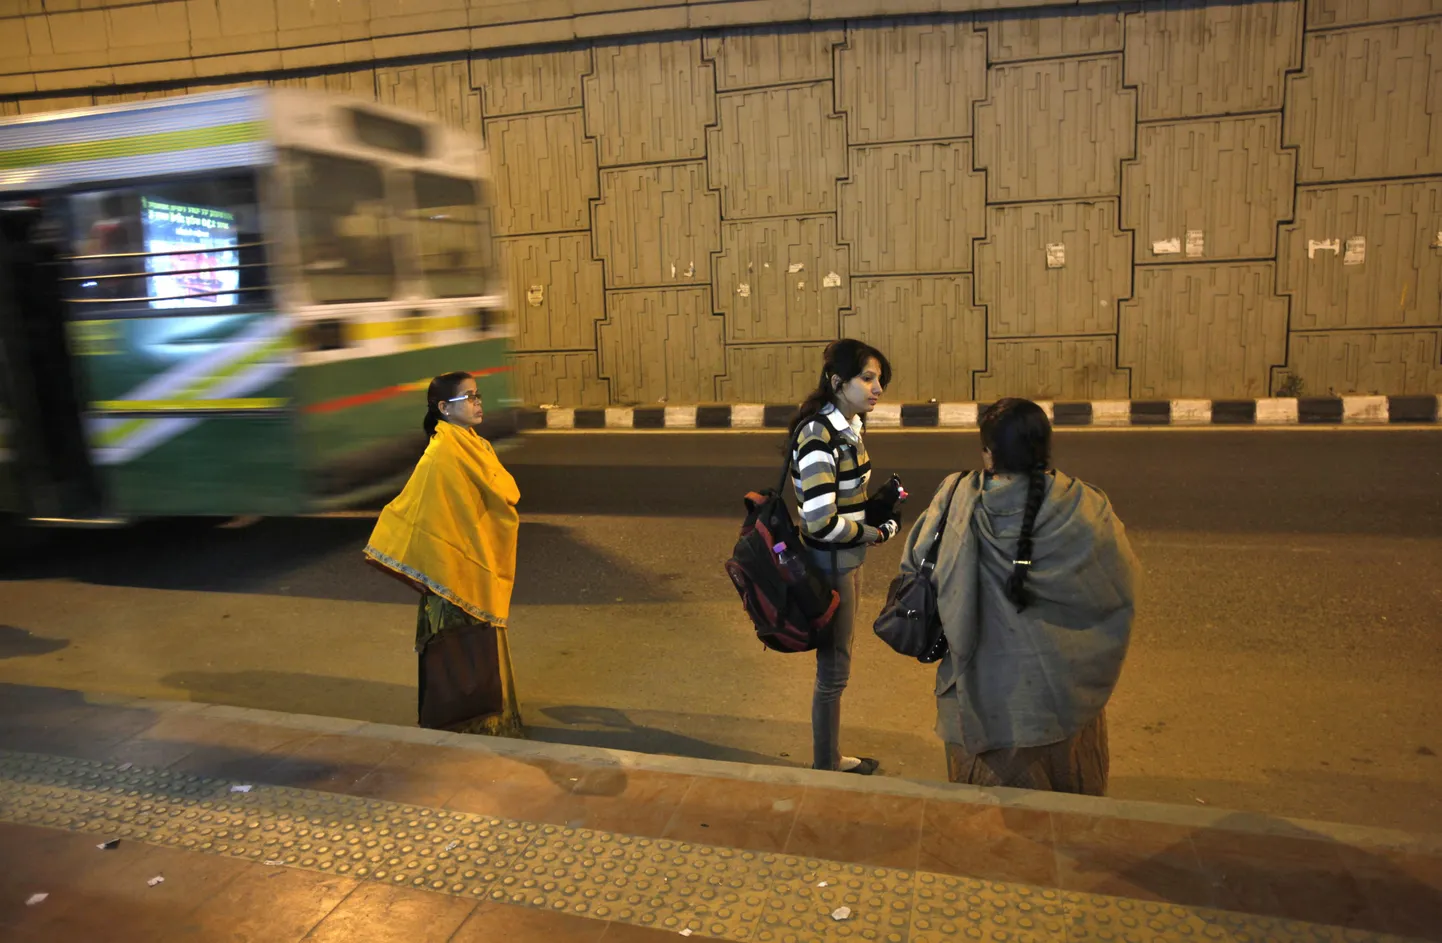 Indialannad New Delhis selle peatuse juures bussi ootamas, kust läks peale vägistamisohvriks sattunud 23-aastane naine.